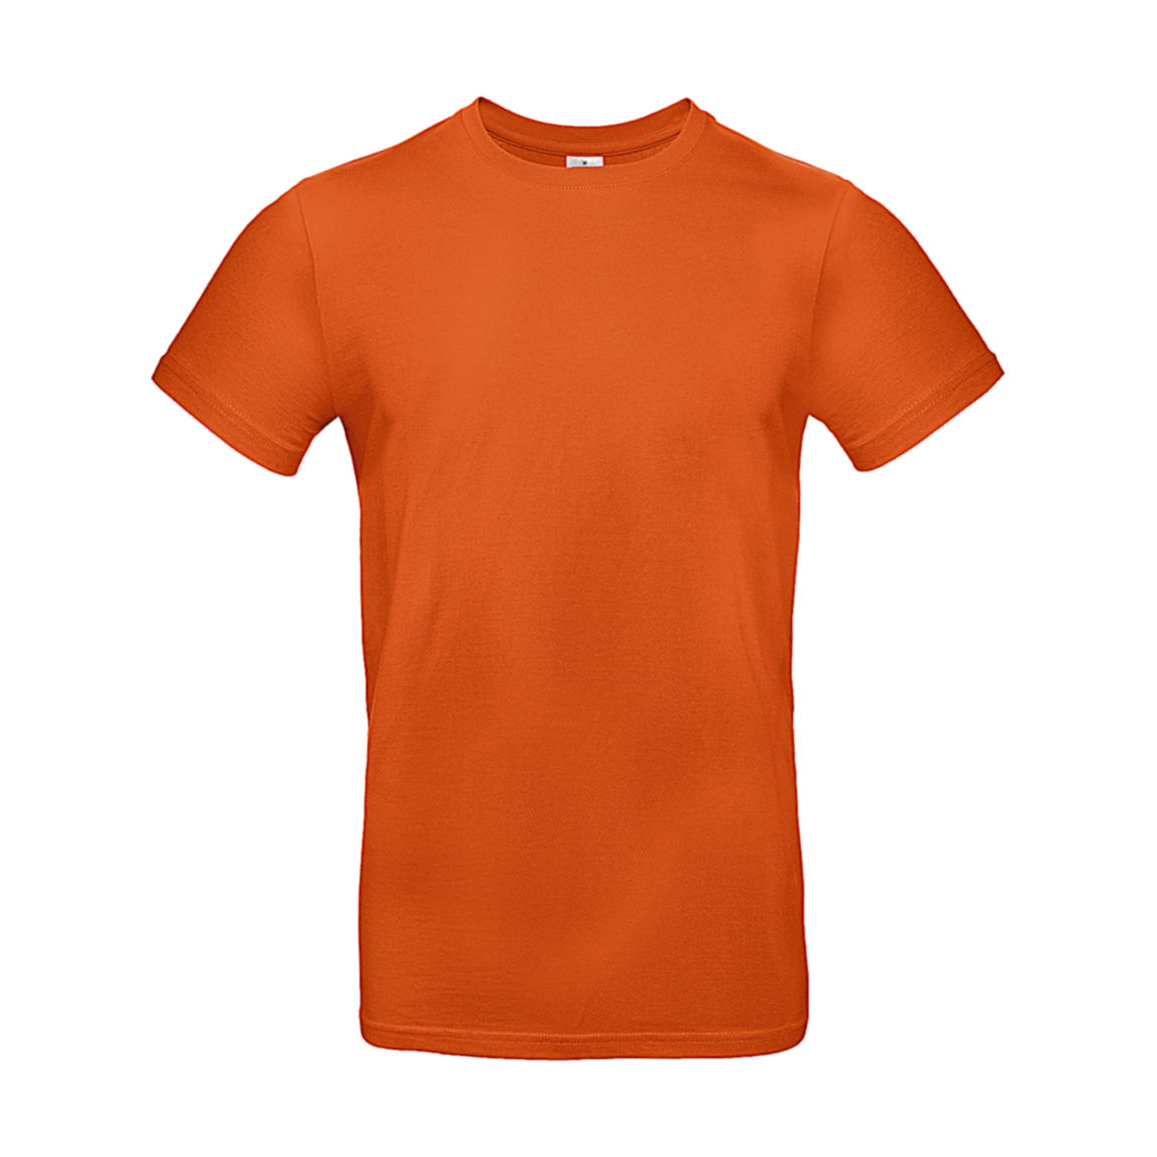 Triko pánské B&C E190 T-Shirt - středně oranžové, XL